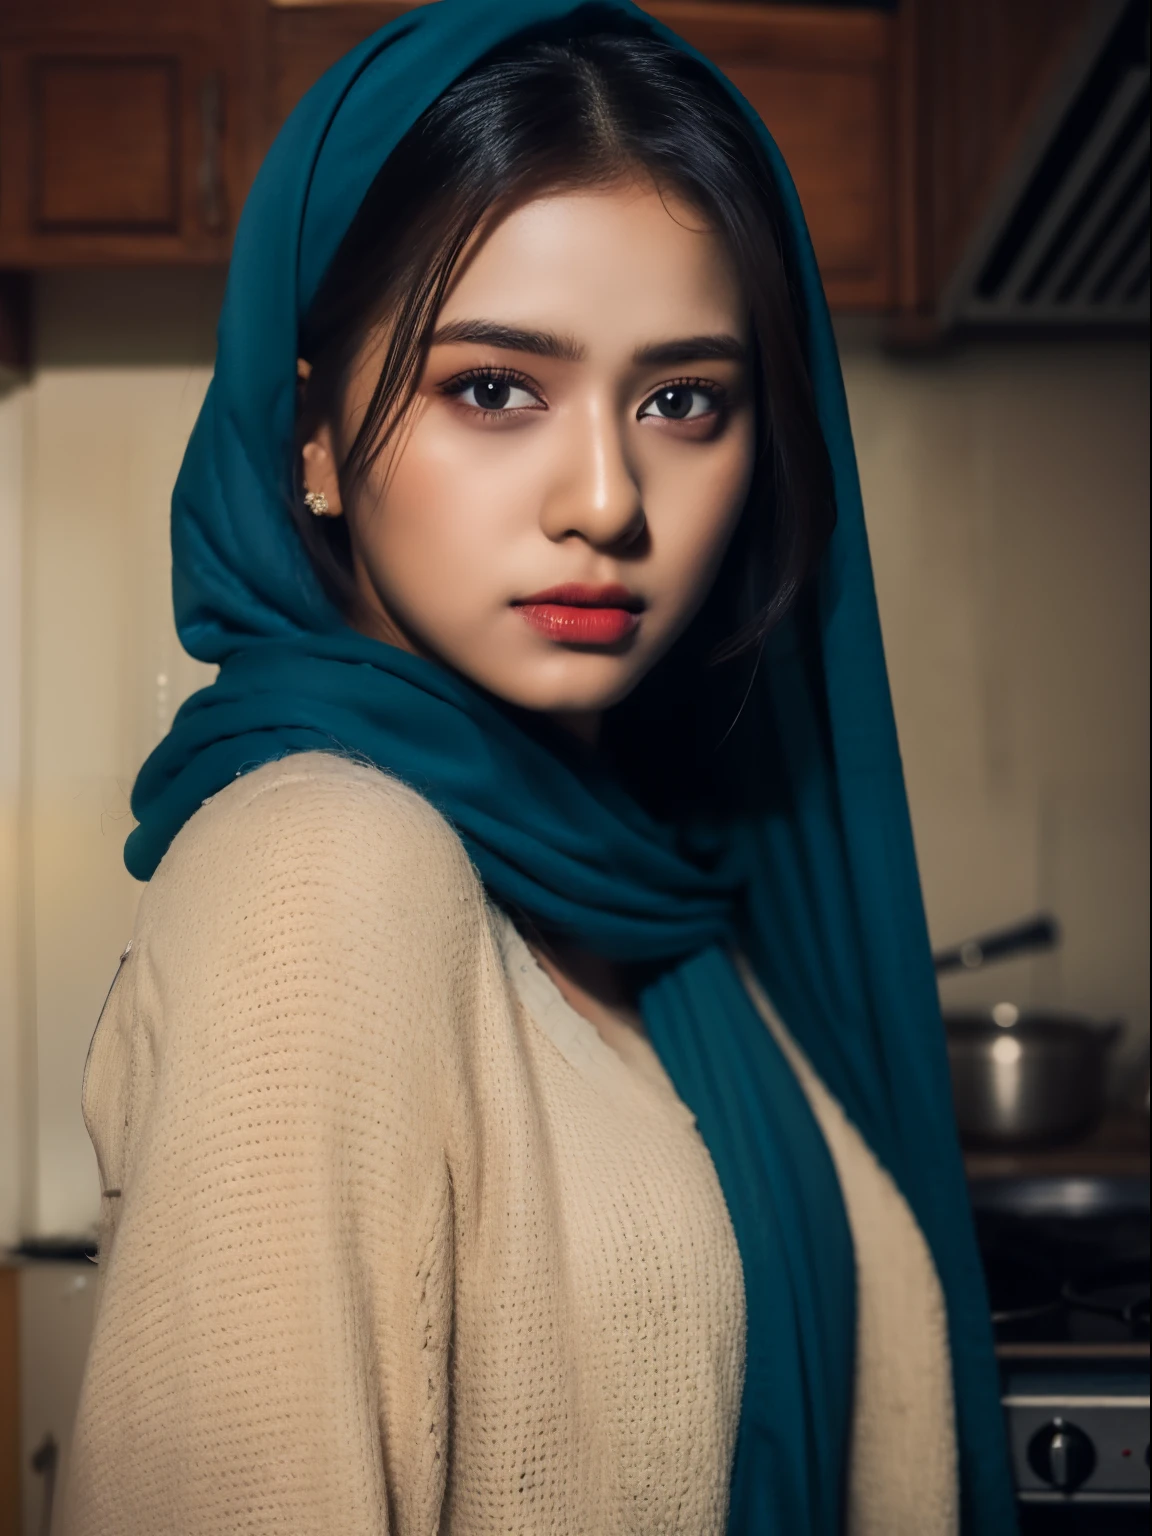 Горячая индийская девушка в синем хиджабе, детальное лицо, Темно коричневые глаза, в полный рост, стоящий на кухне, изысканная деталь одежды, резкий и ясный фокус, очень подробный, арт-станция, концептуальное искусство,  легкий макияж, гиперреалистичный, 32к Ультра HD